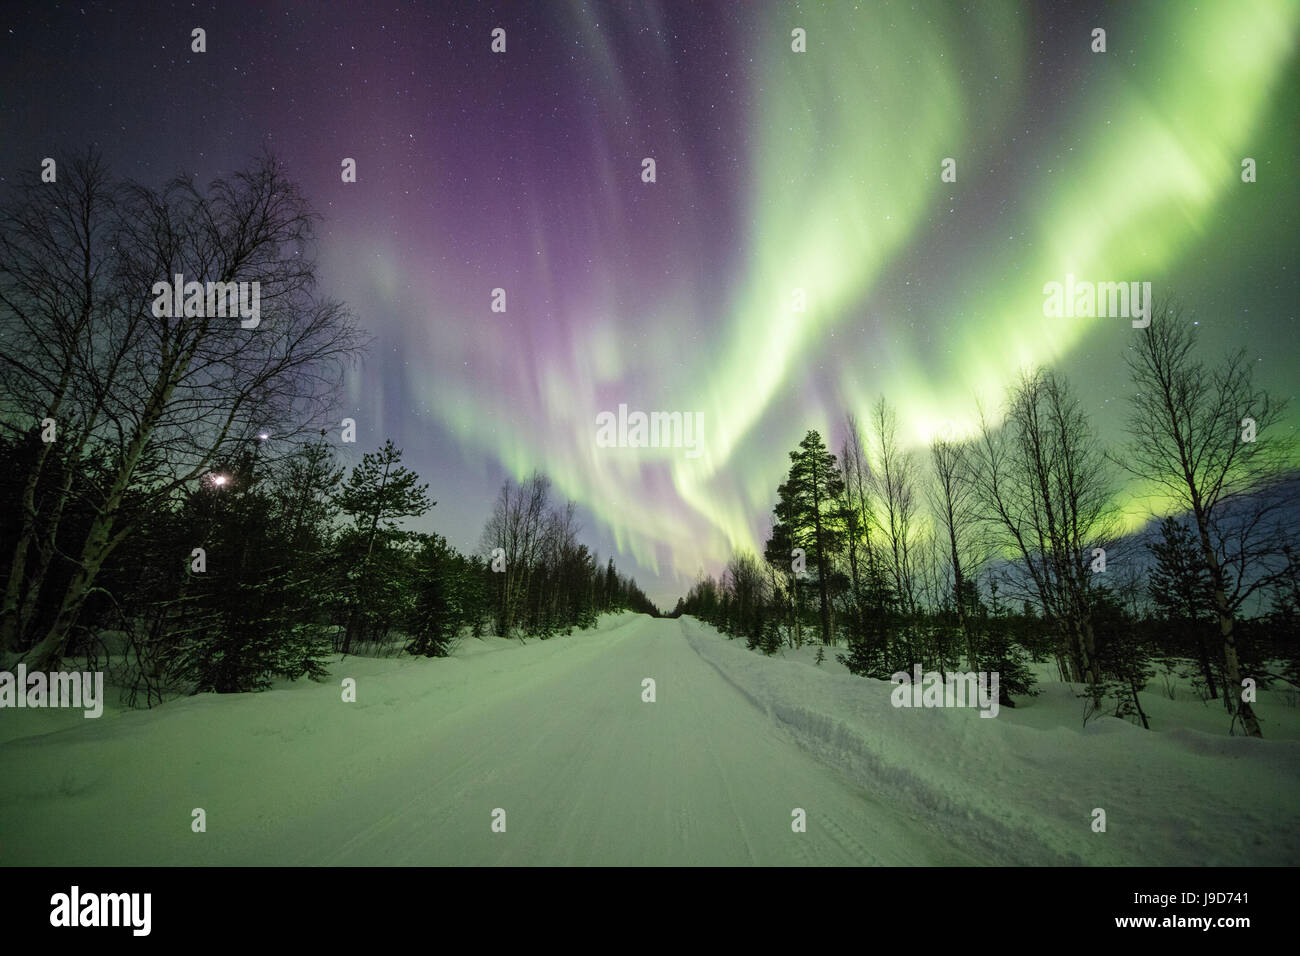 Lumières colorées de la Northern Lights (aurores boréales) et ciel étoilé sur la Snowy Woods, Levi, Sirkka, mine Kittila, Finlande Banque D'Images